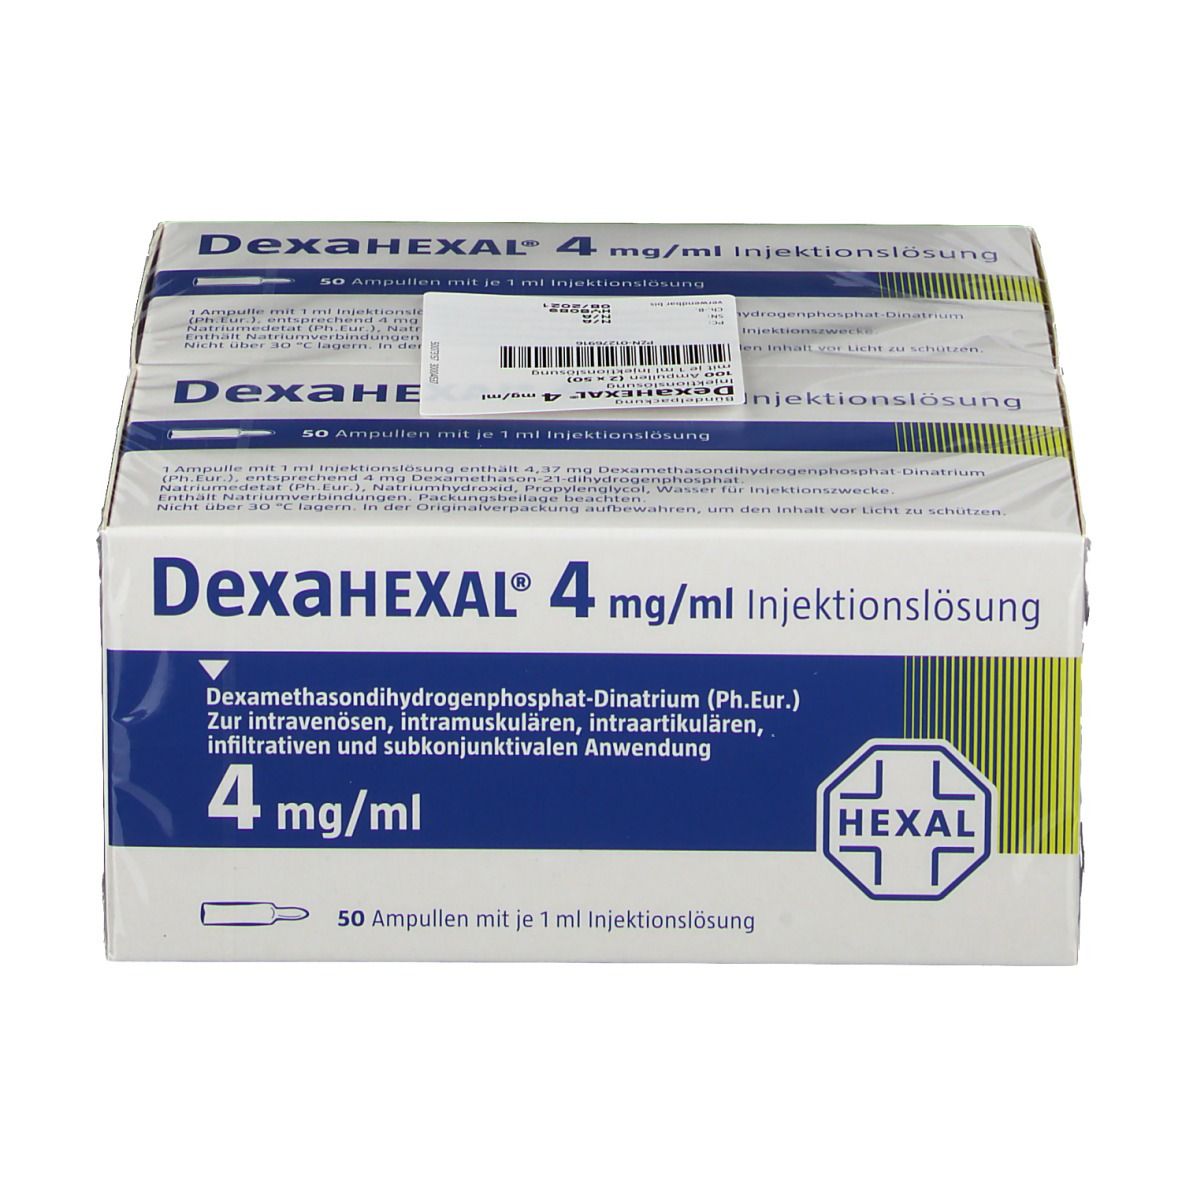 DexaHEXAL® 4 mg/ml